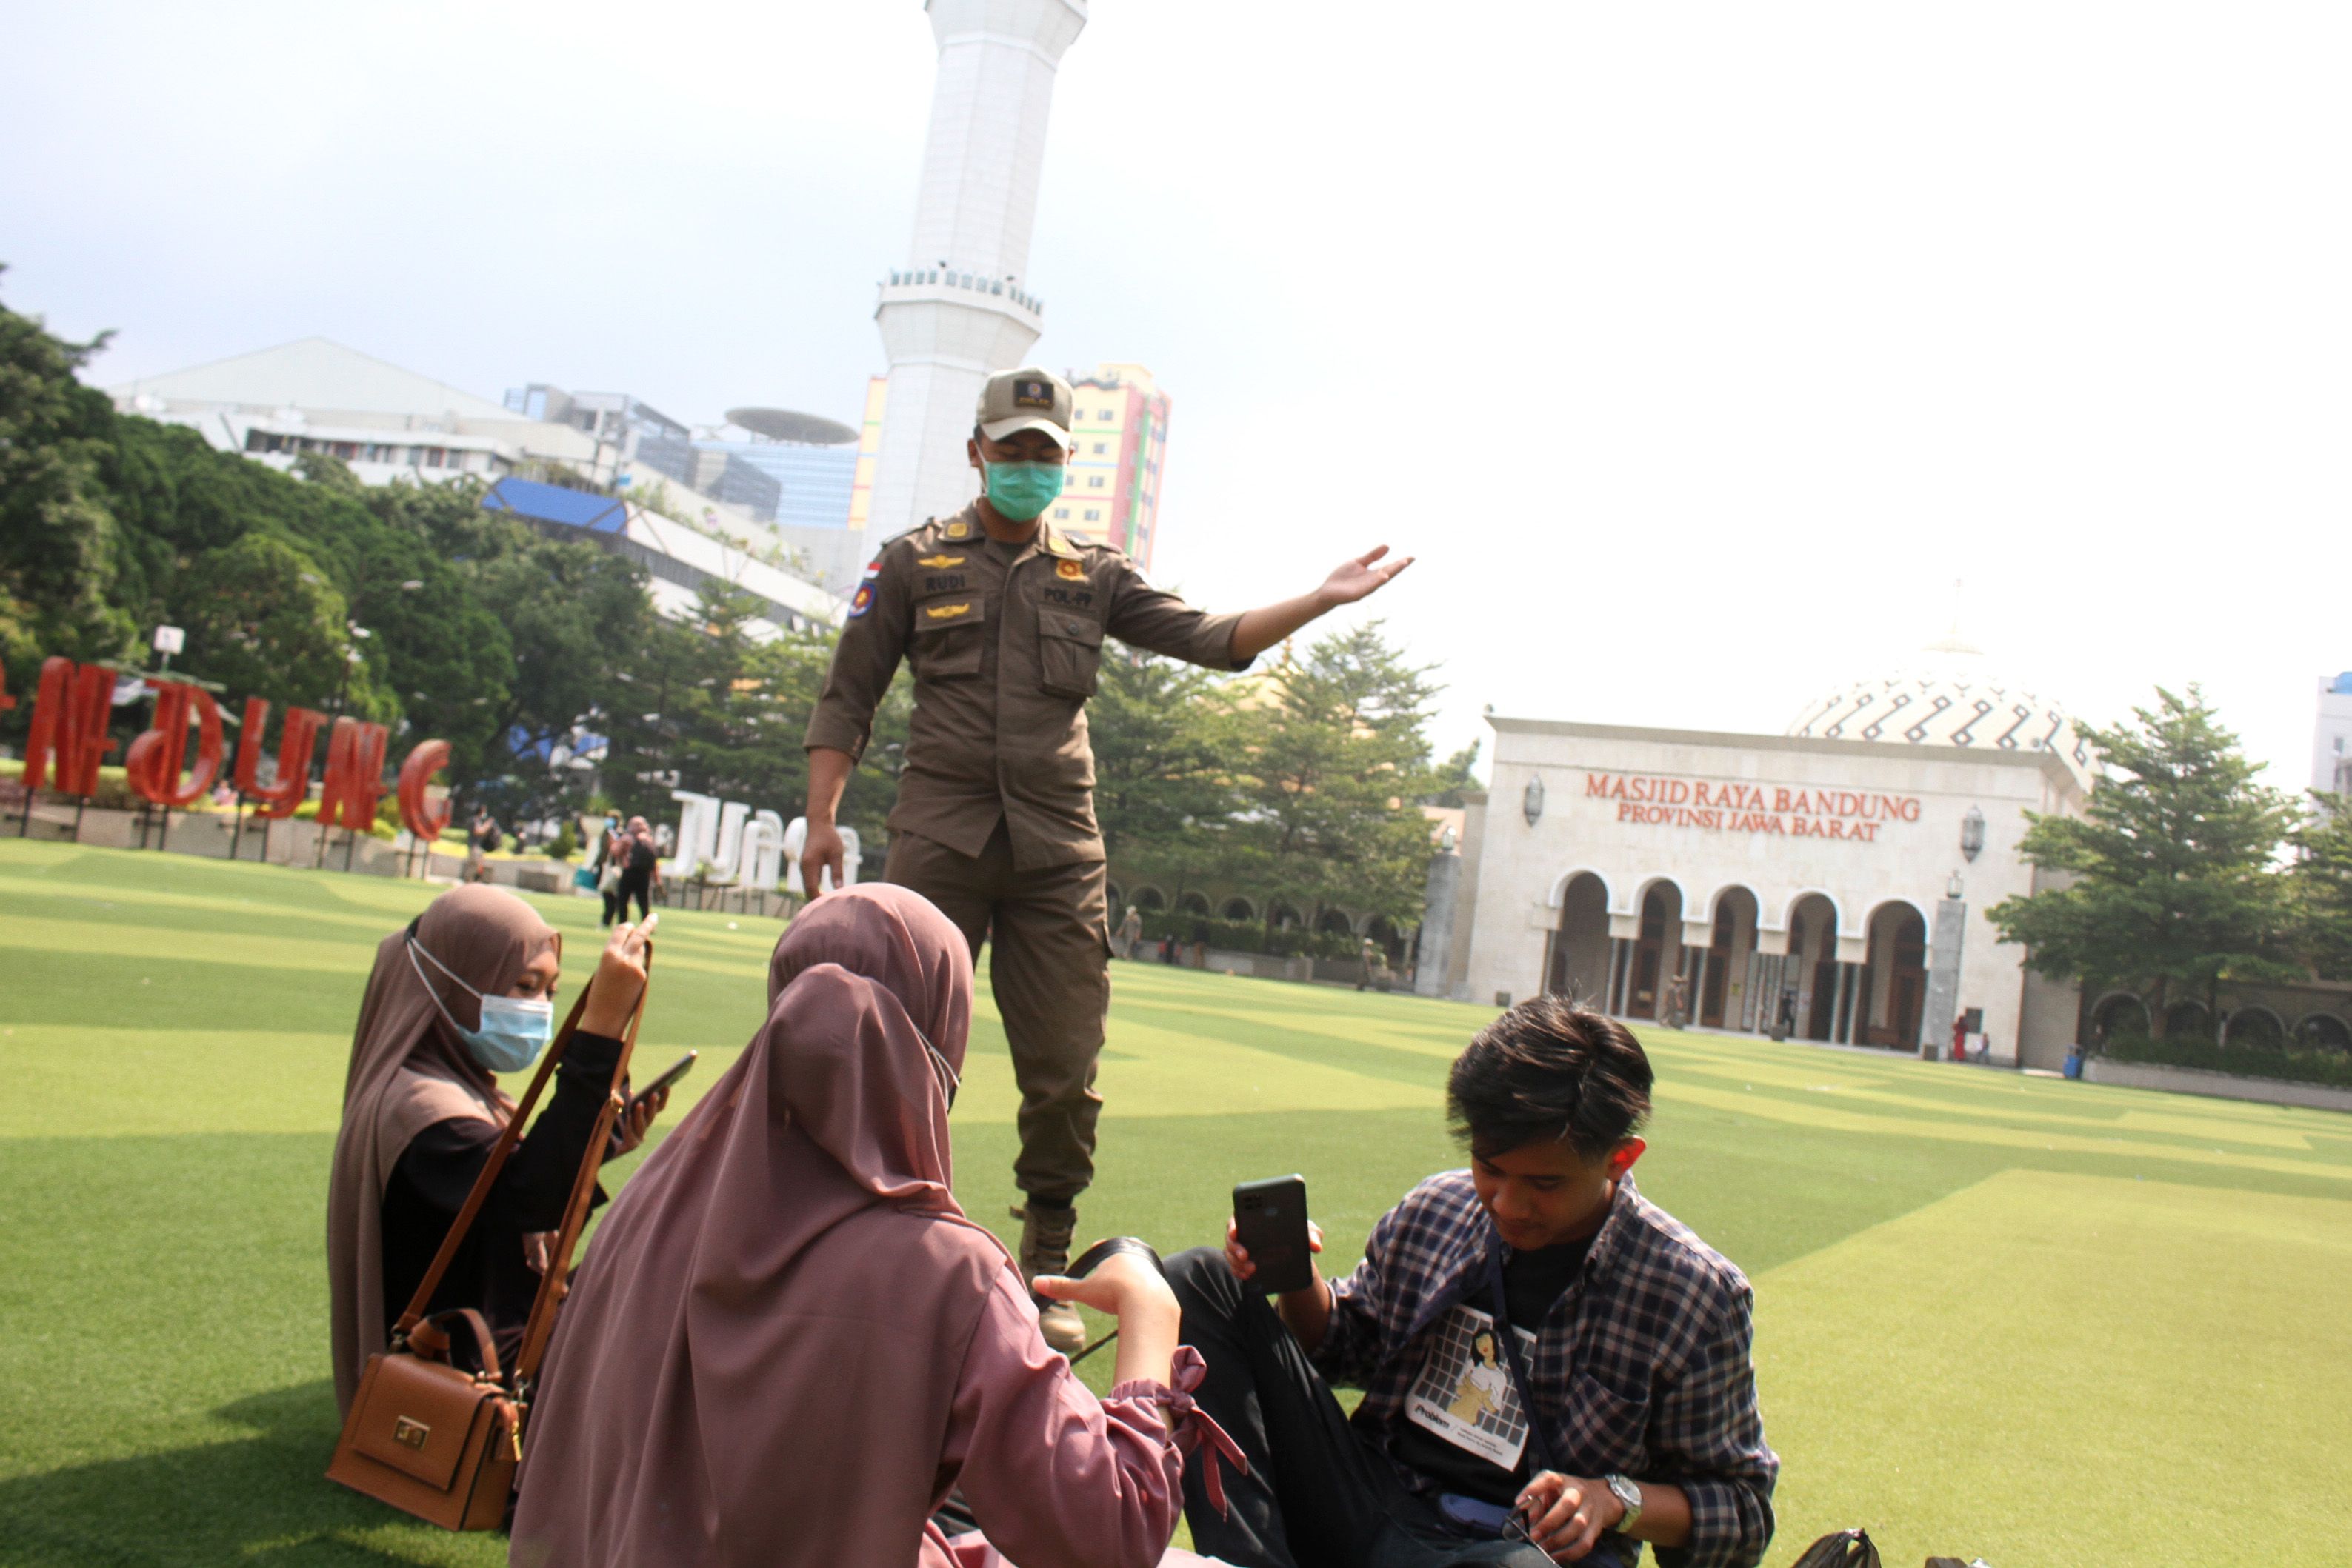 Petugas Satpol PP Kota Bandung memberi arahan kepada warga untuk di Taman Alun-alun Bandung, Jln. Dalem Kaum, Kota Bandung, Selasa, 7 September 2021./